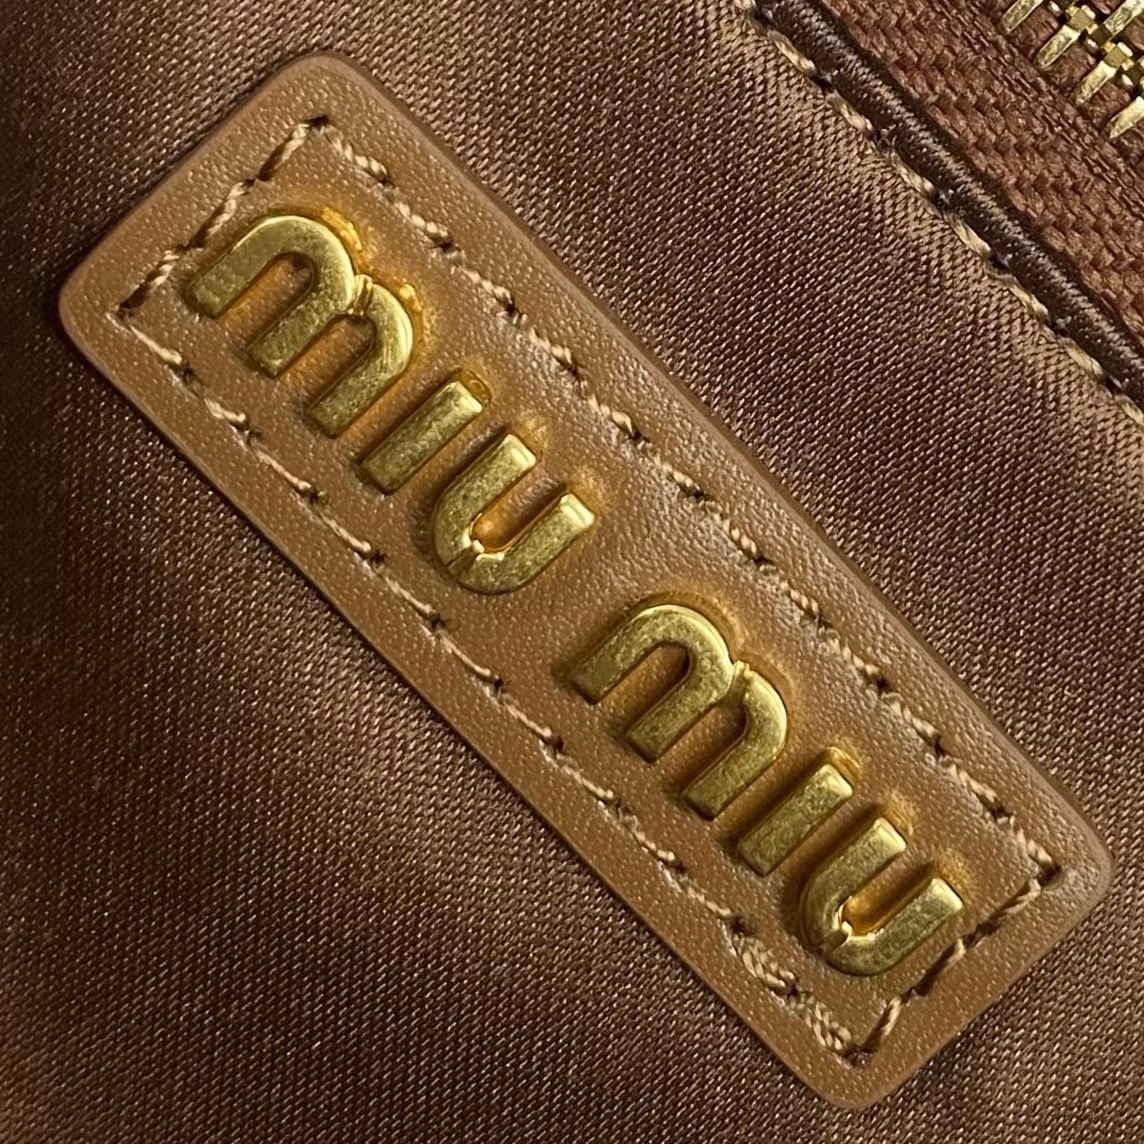 MIU MIU Original Leather Top Handle Bag 5BB147 BROWN